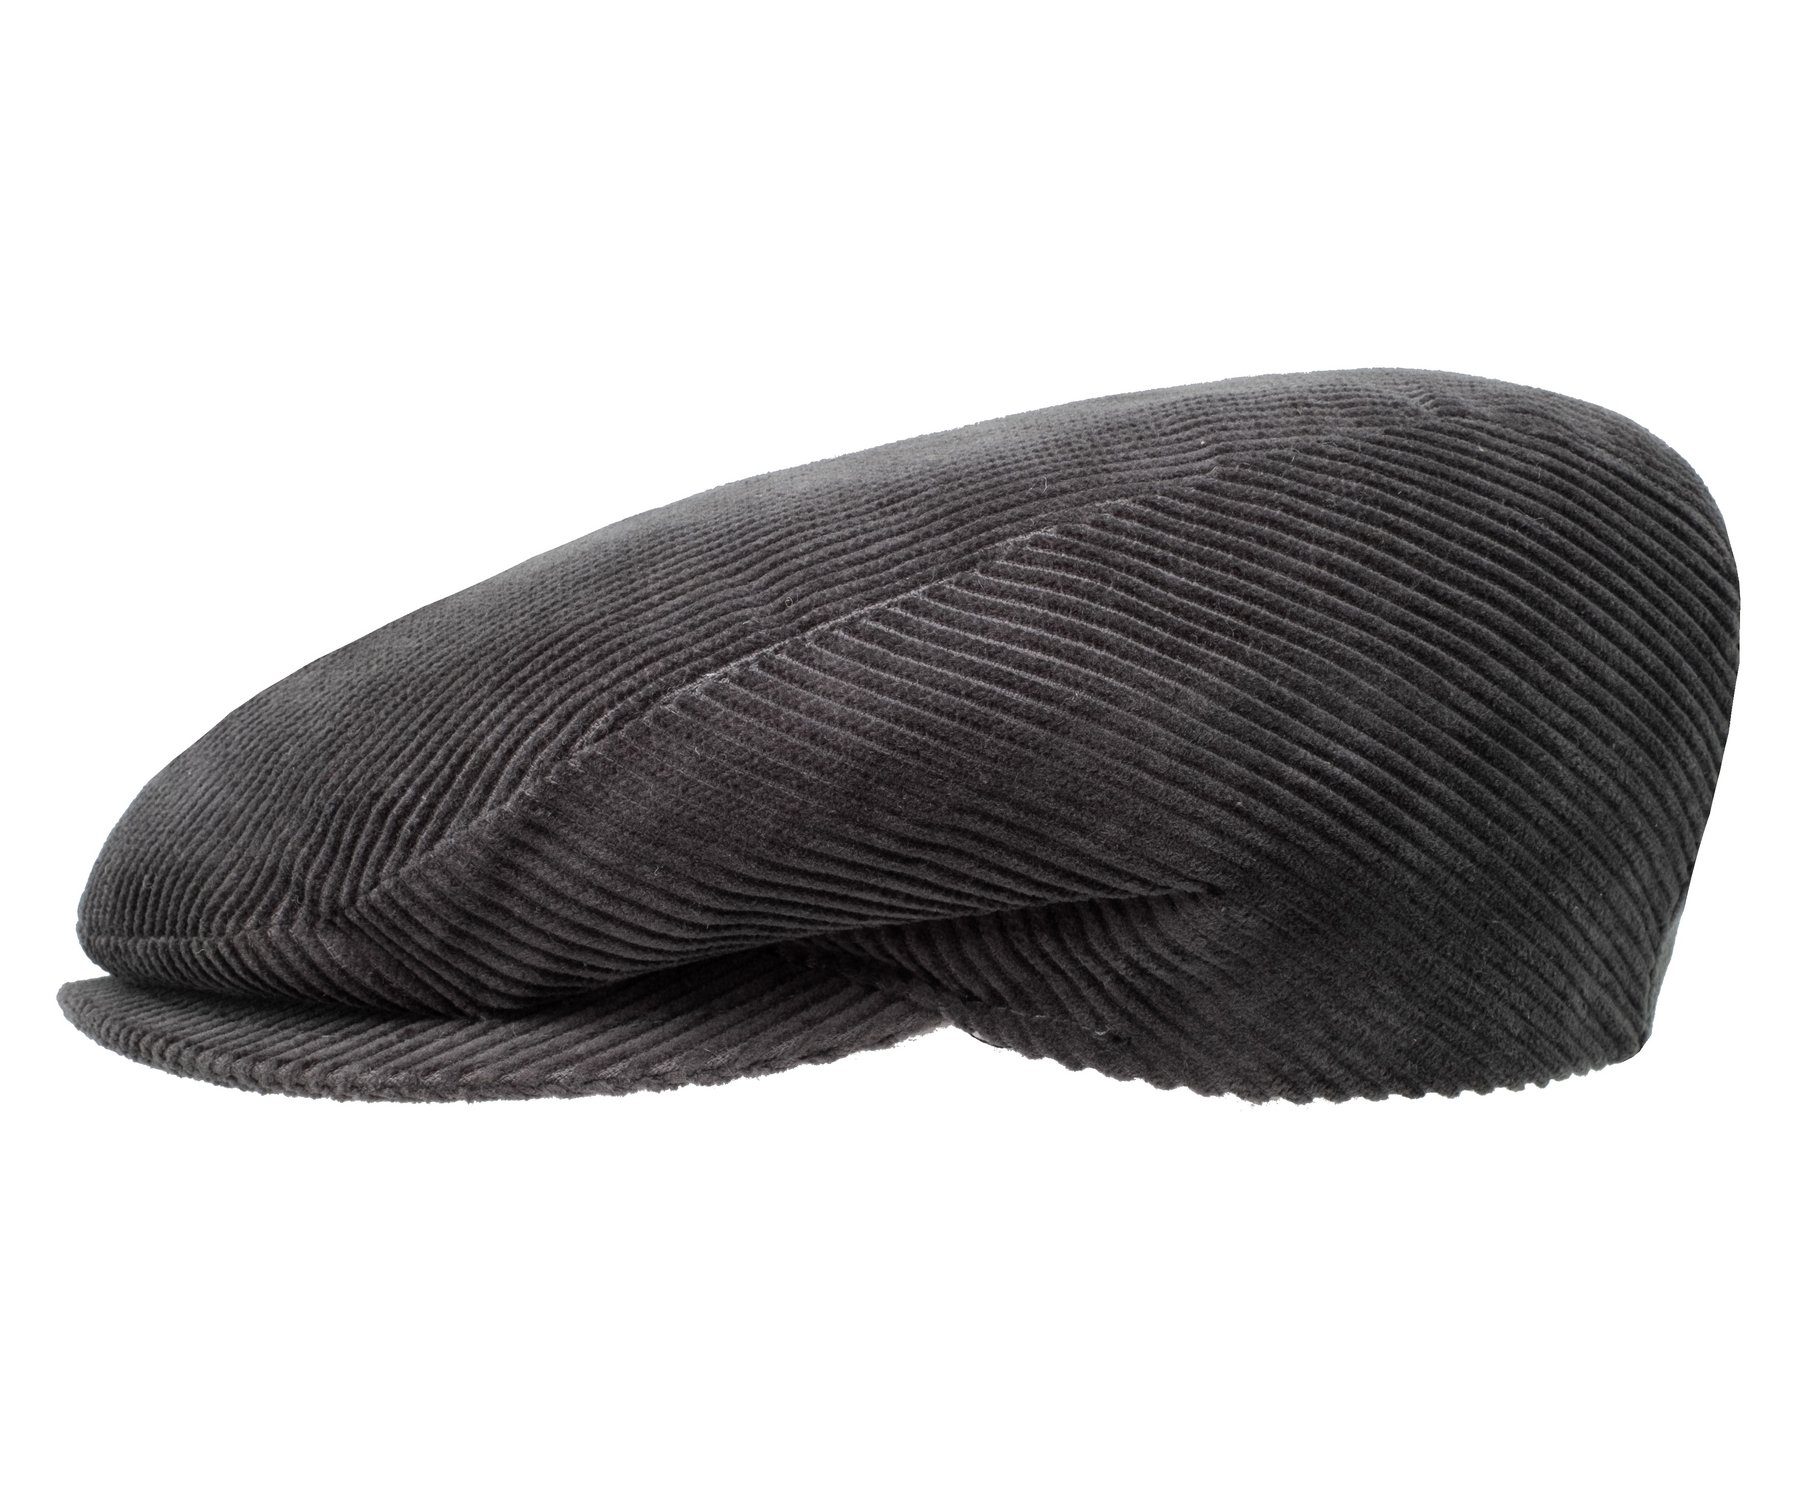 HatBee Flat Cap »Schirmmütze Schiebermütze Baumwolle in Cord« Cordmütze